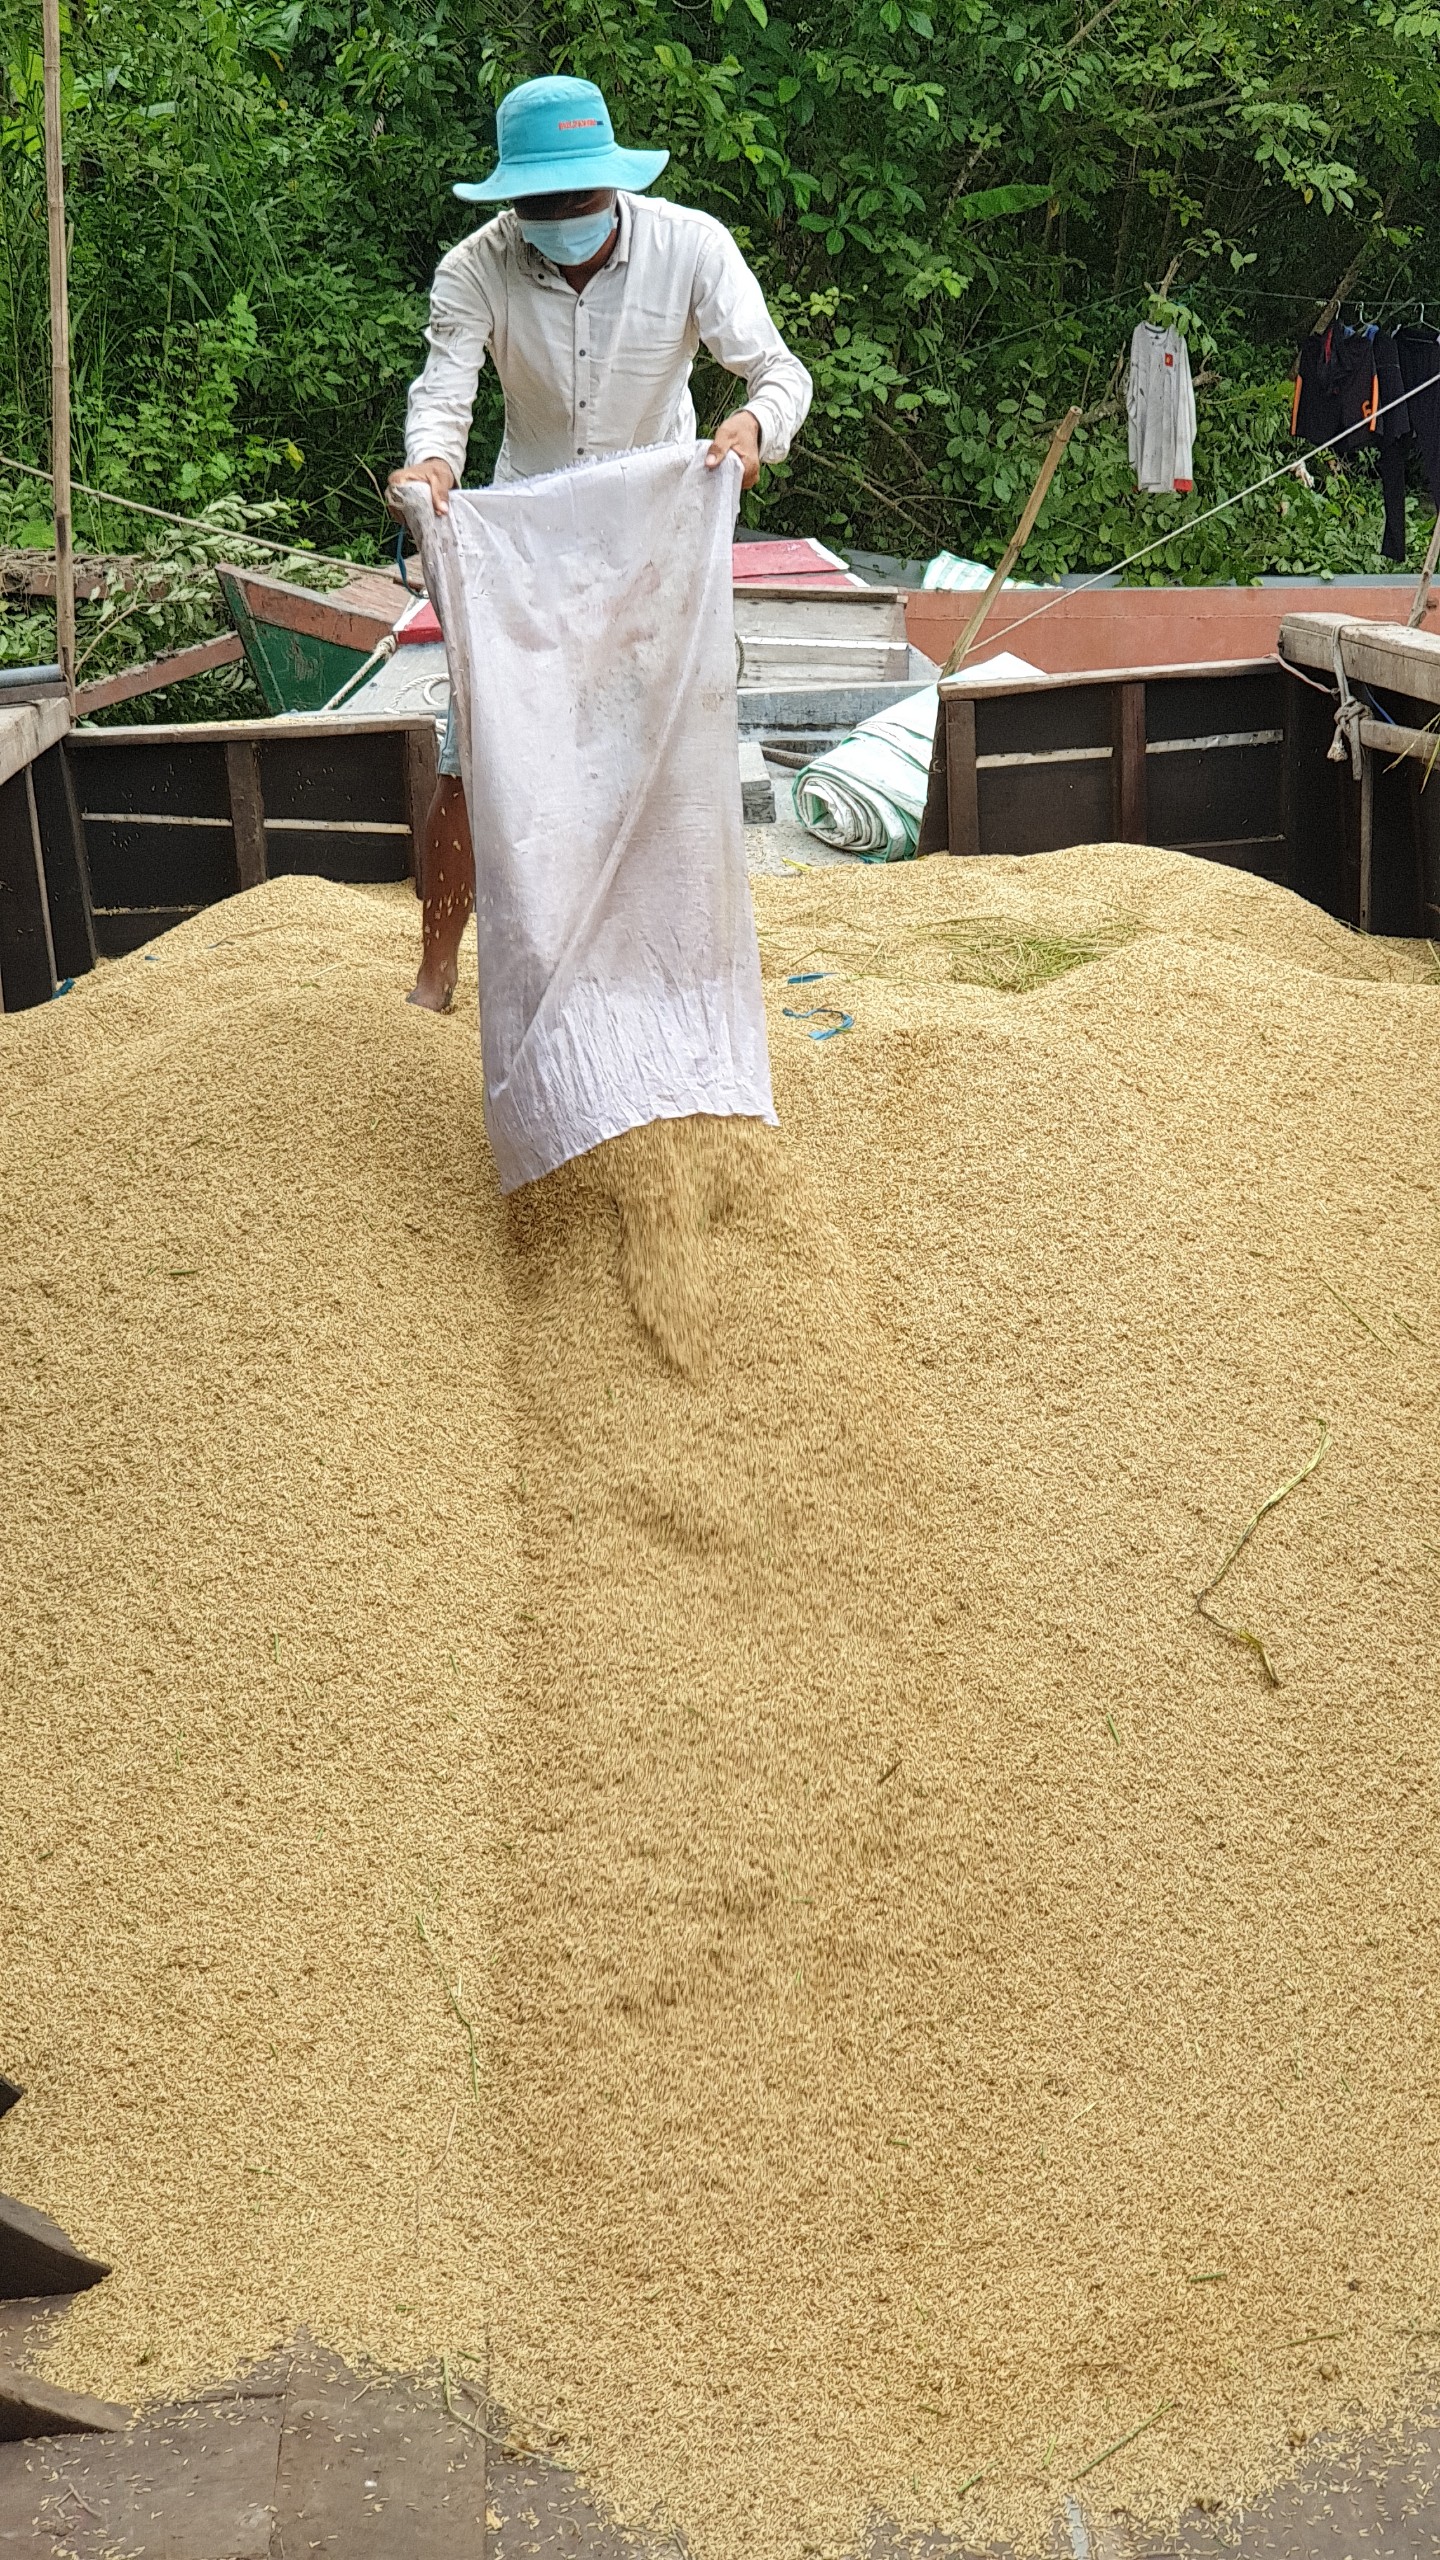 Liên kết trồng lúa, gạo Việt bay sang Âu, Mỹ - Ảnh 2.